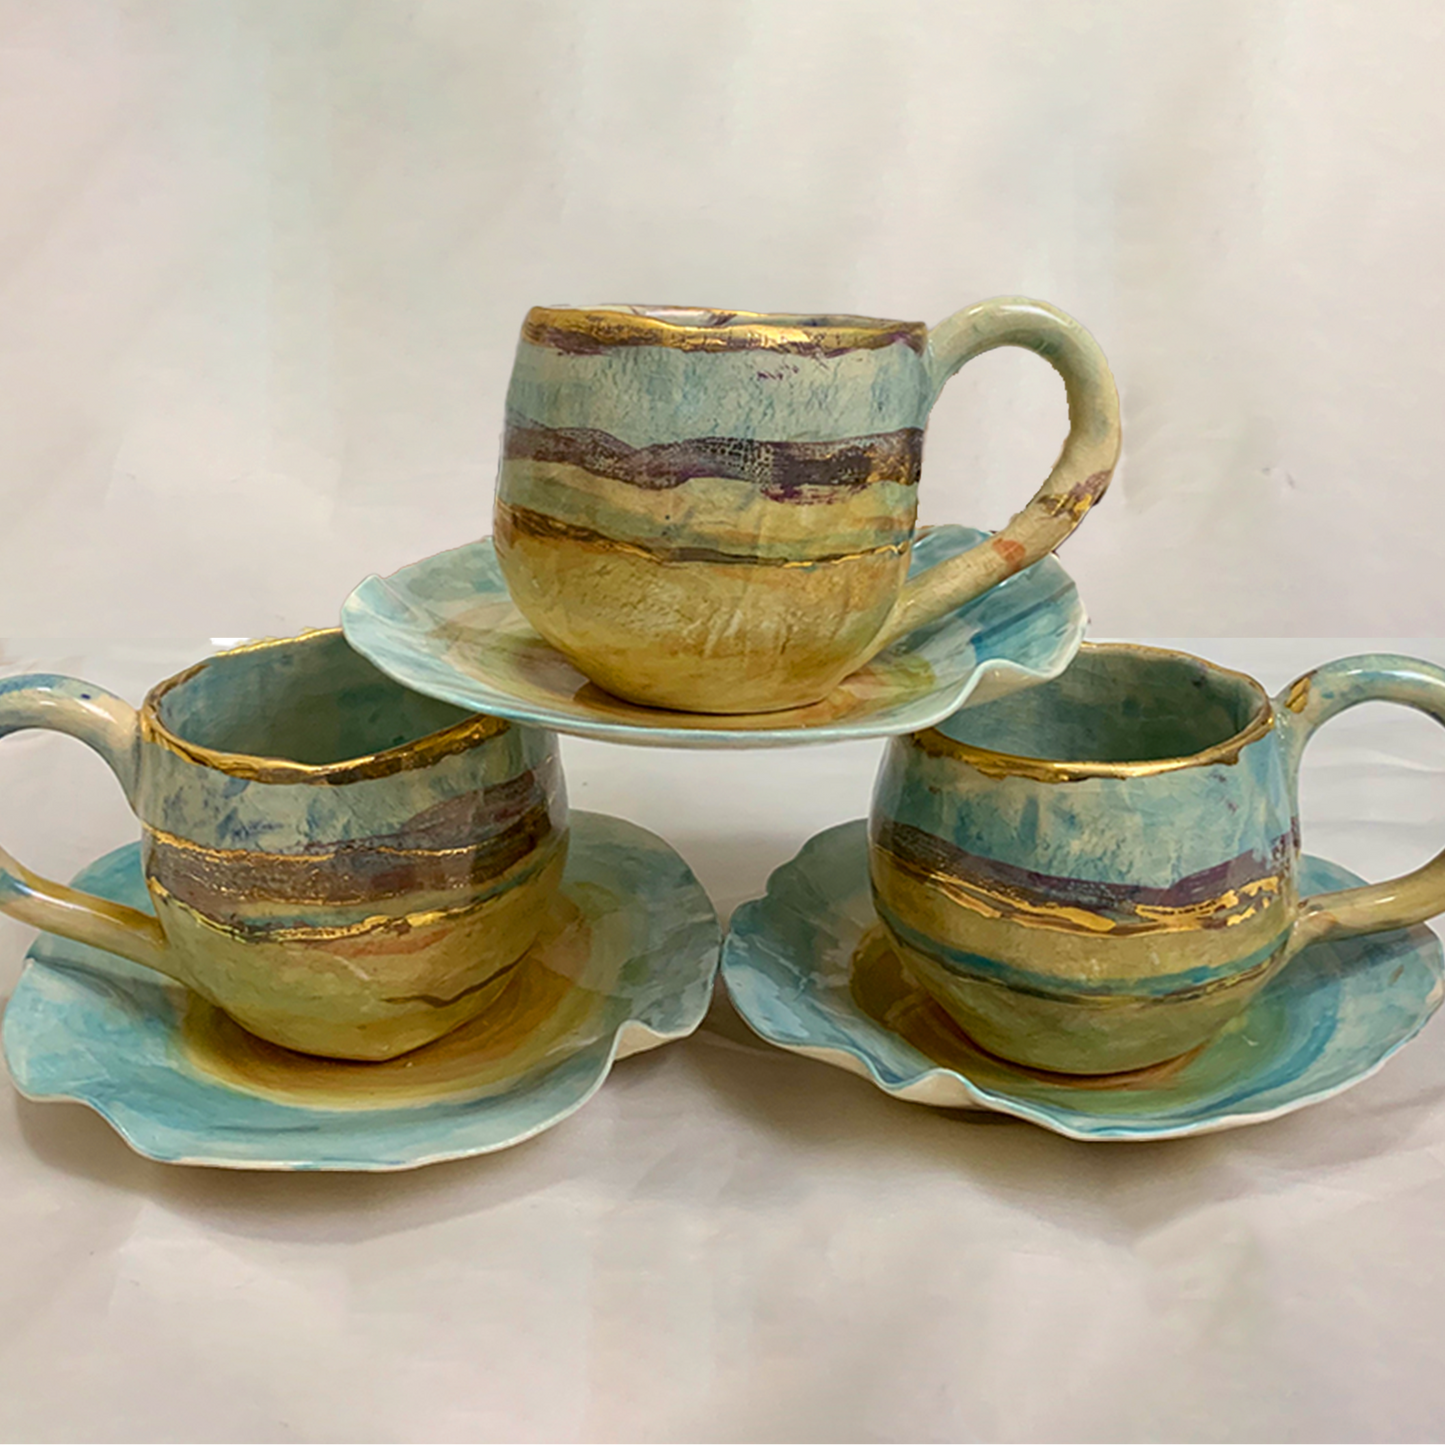 Negev Teacups & Side Plates- Set of 3